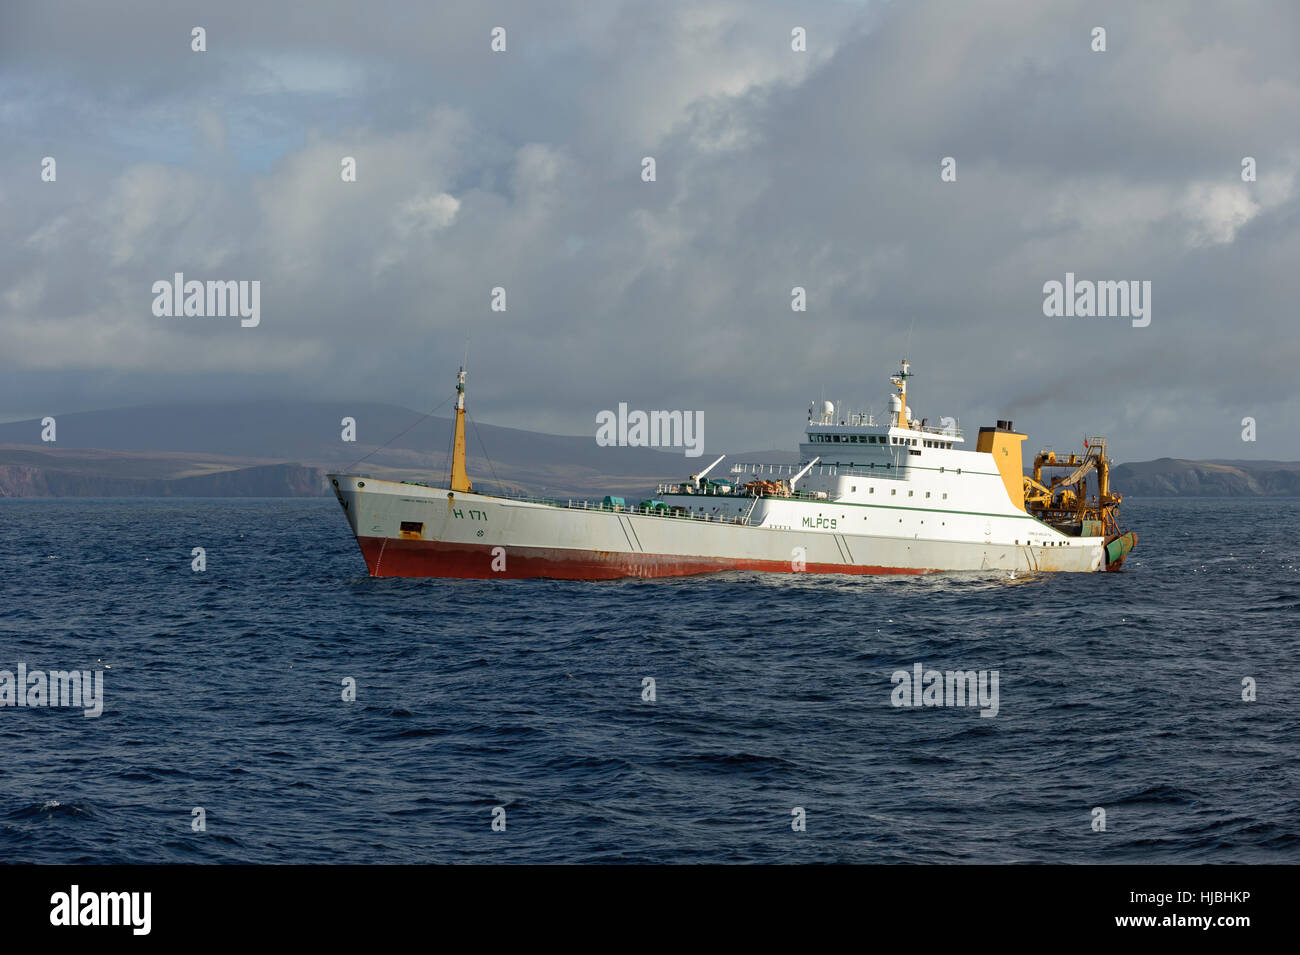 Hull-enregistré navire usine "Cornelis Vrolijk" la pêche du maquereau au large de la côte ouest de l'archipel des Shetland. Octobre 2012. Banque D'Images